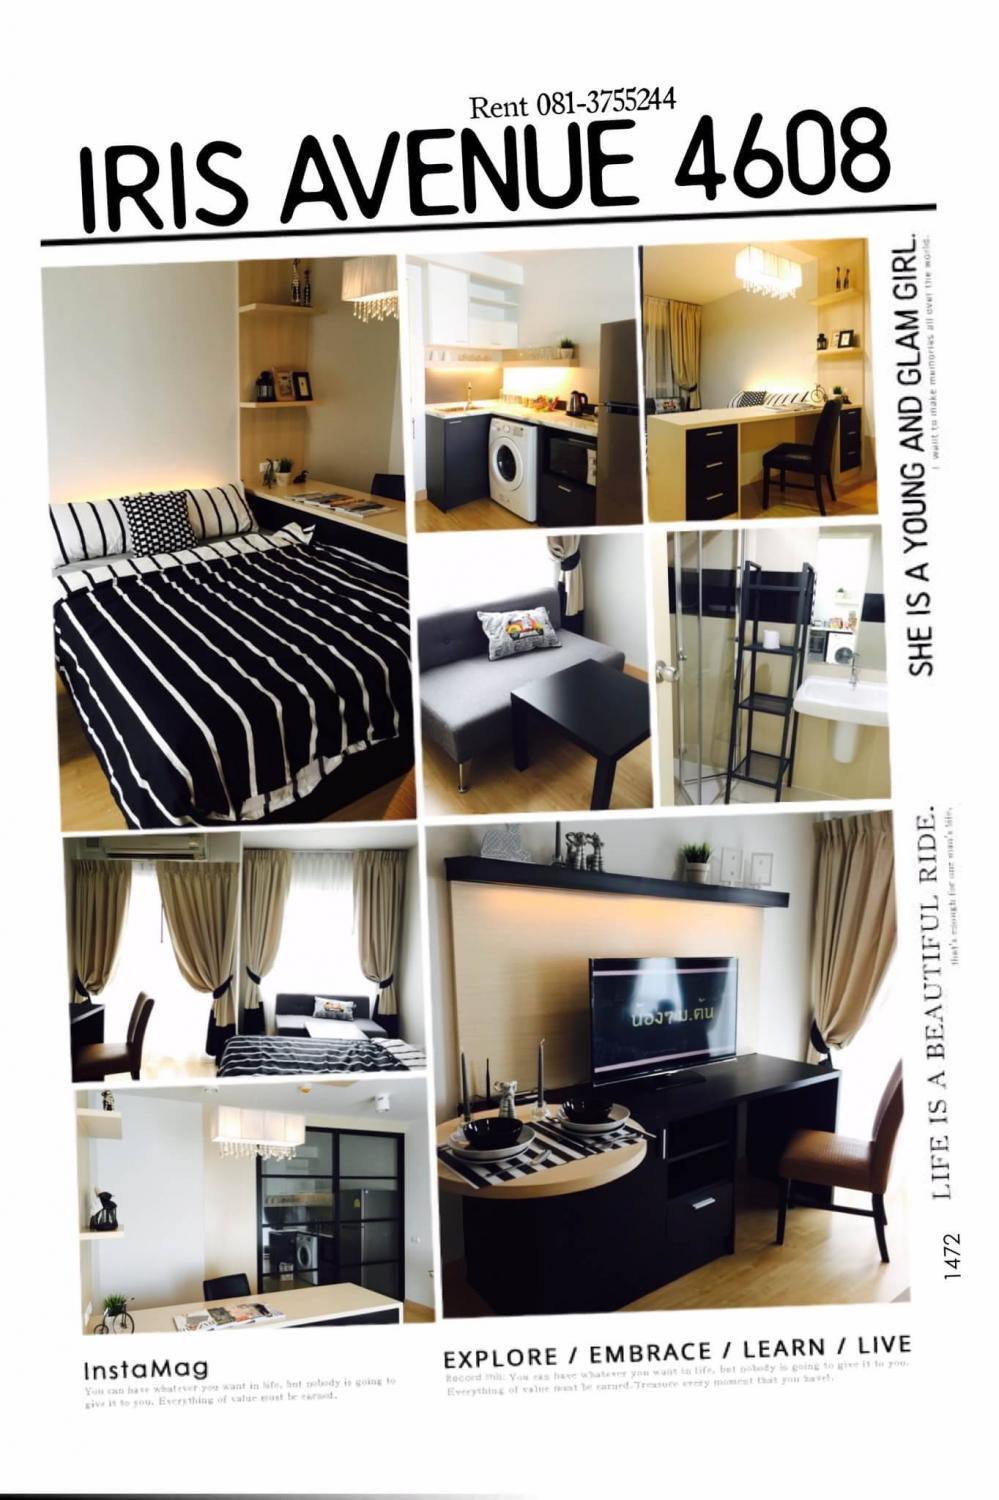 เช่าคอนโด ไอริส แอเวนิว อ่อนนุช-สุวรรณภูมิ คอนโดมิเนียม - Condo Rental IRIS Avenue Onnuch-Suvarnabhumi condominium - 519185